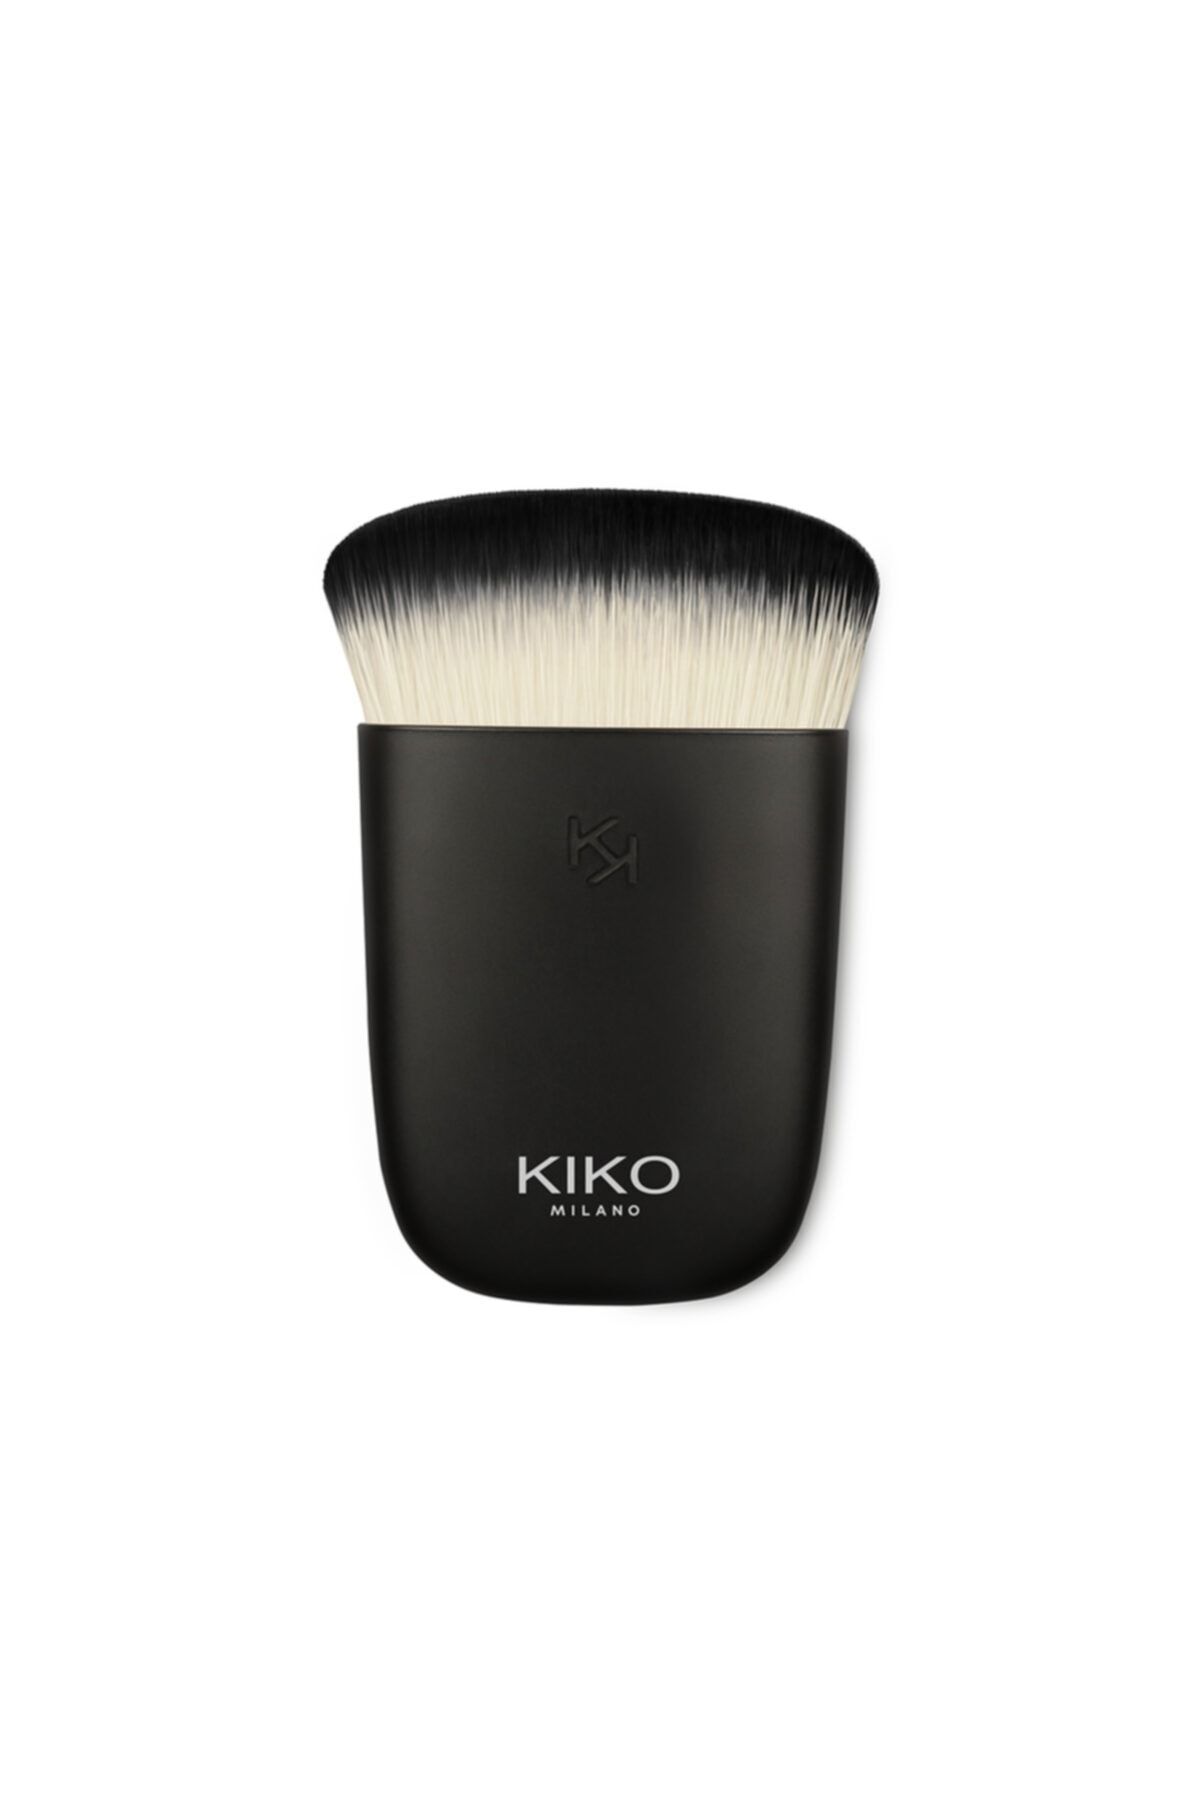 KIKO Yüz Makyajı Fırçası - Face 16 Multi-Purpose Kabuki Brush